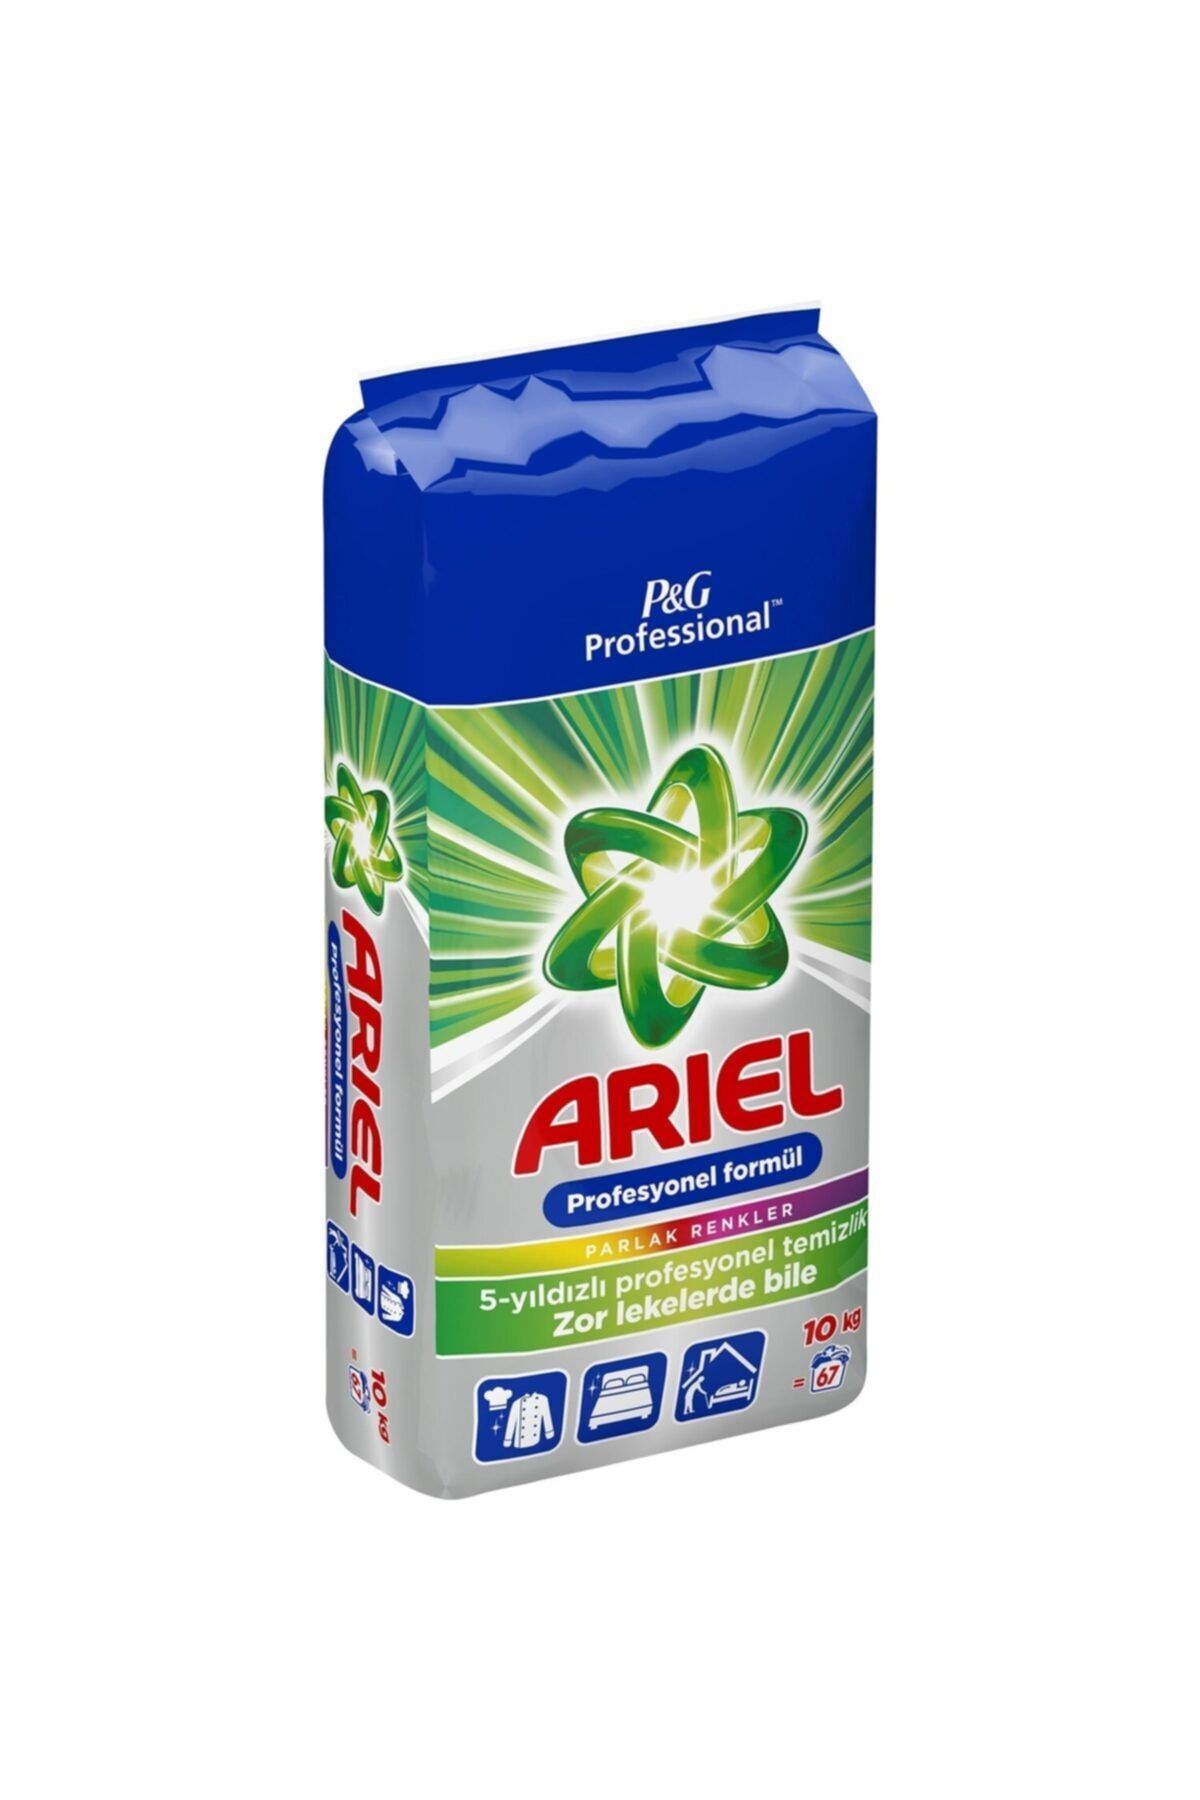 Ariel Professional Parlak Renkler 10 Kg Matik Deterjan